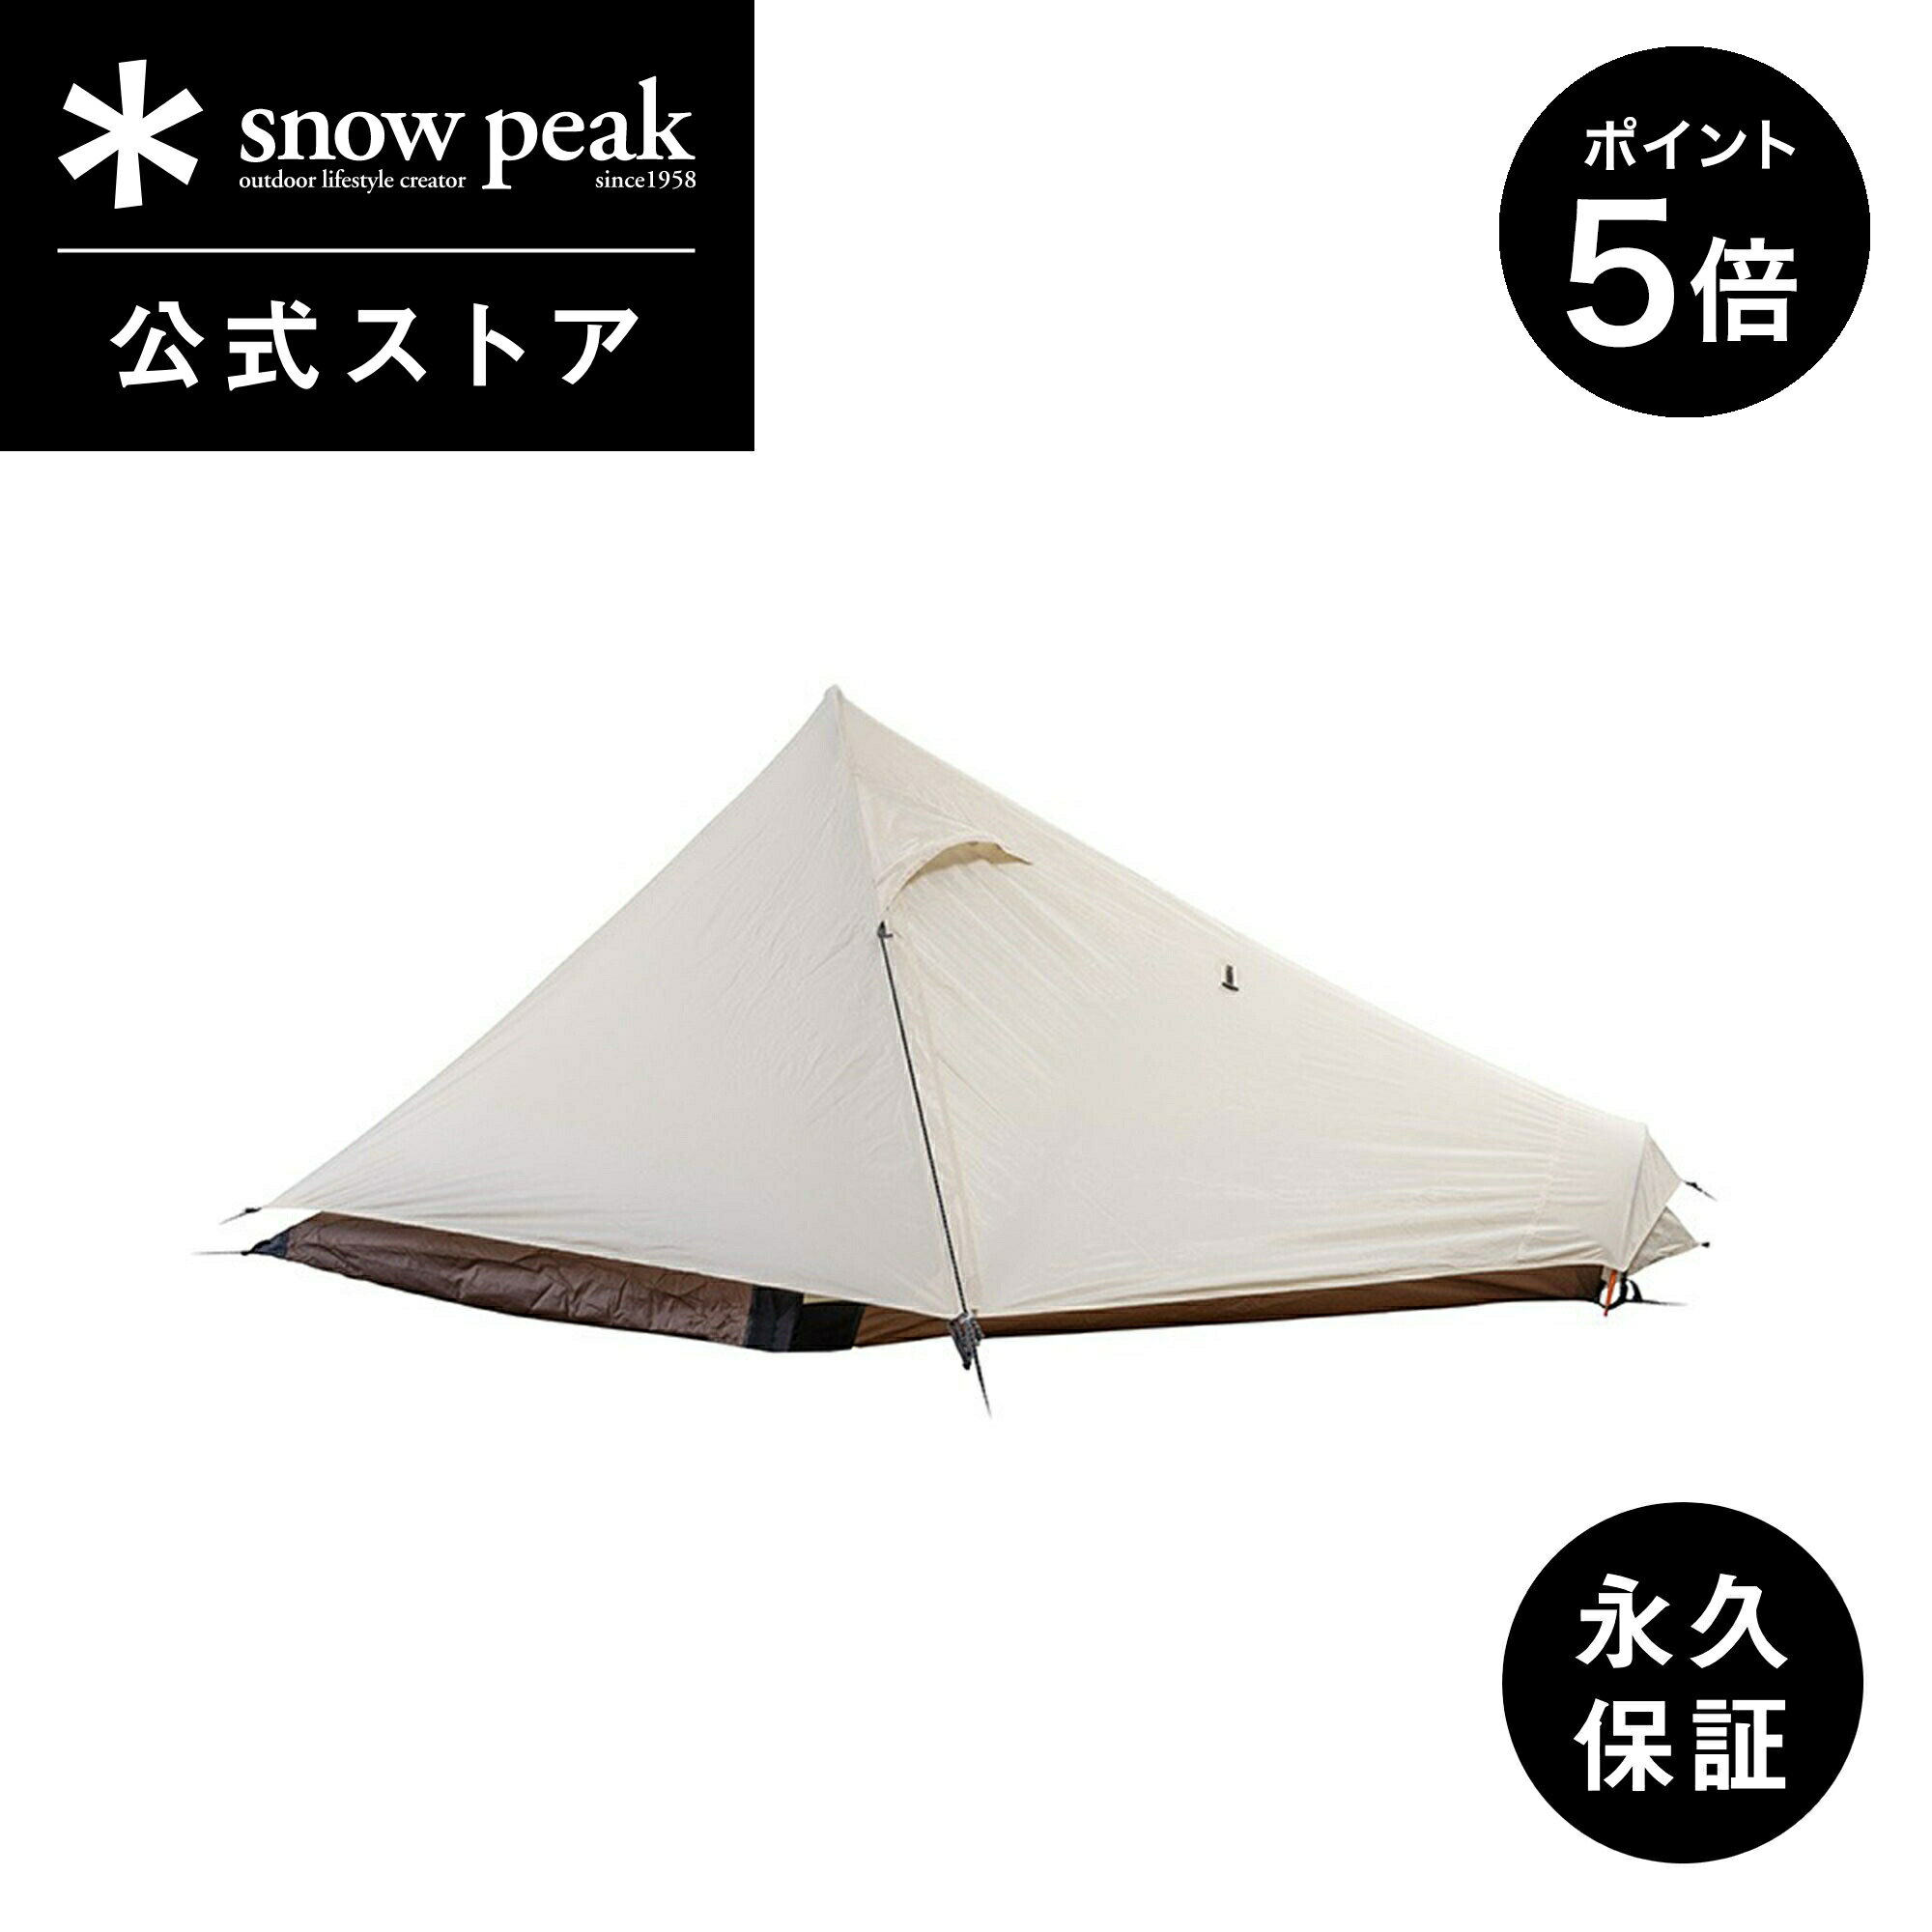 snowpeak ラゴ1 アイボリー  SSD-730-IV-US テント ブランド おしゃれ 安全 丈夫 キャンプ アウトドア バーベキュー ピクニック